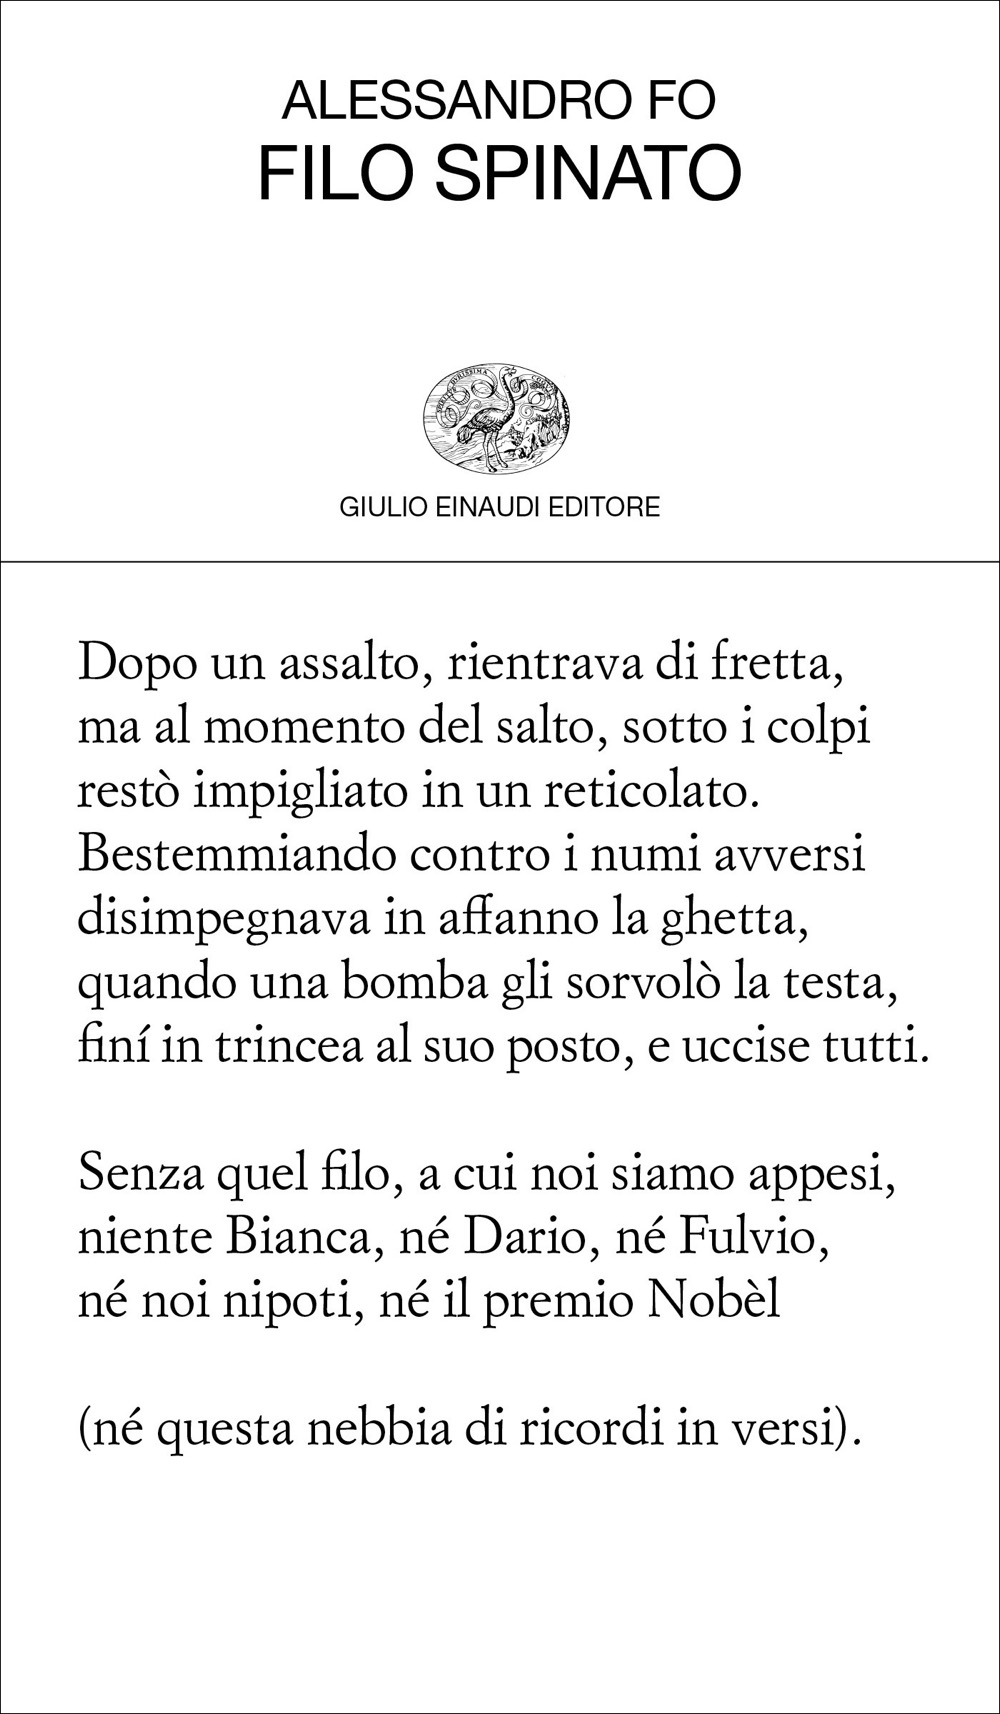 Filo spinato, Alessandro Fo. Giulio Einaudi editore - Collezione di poesia